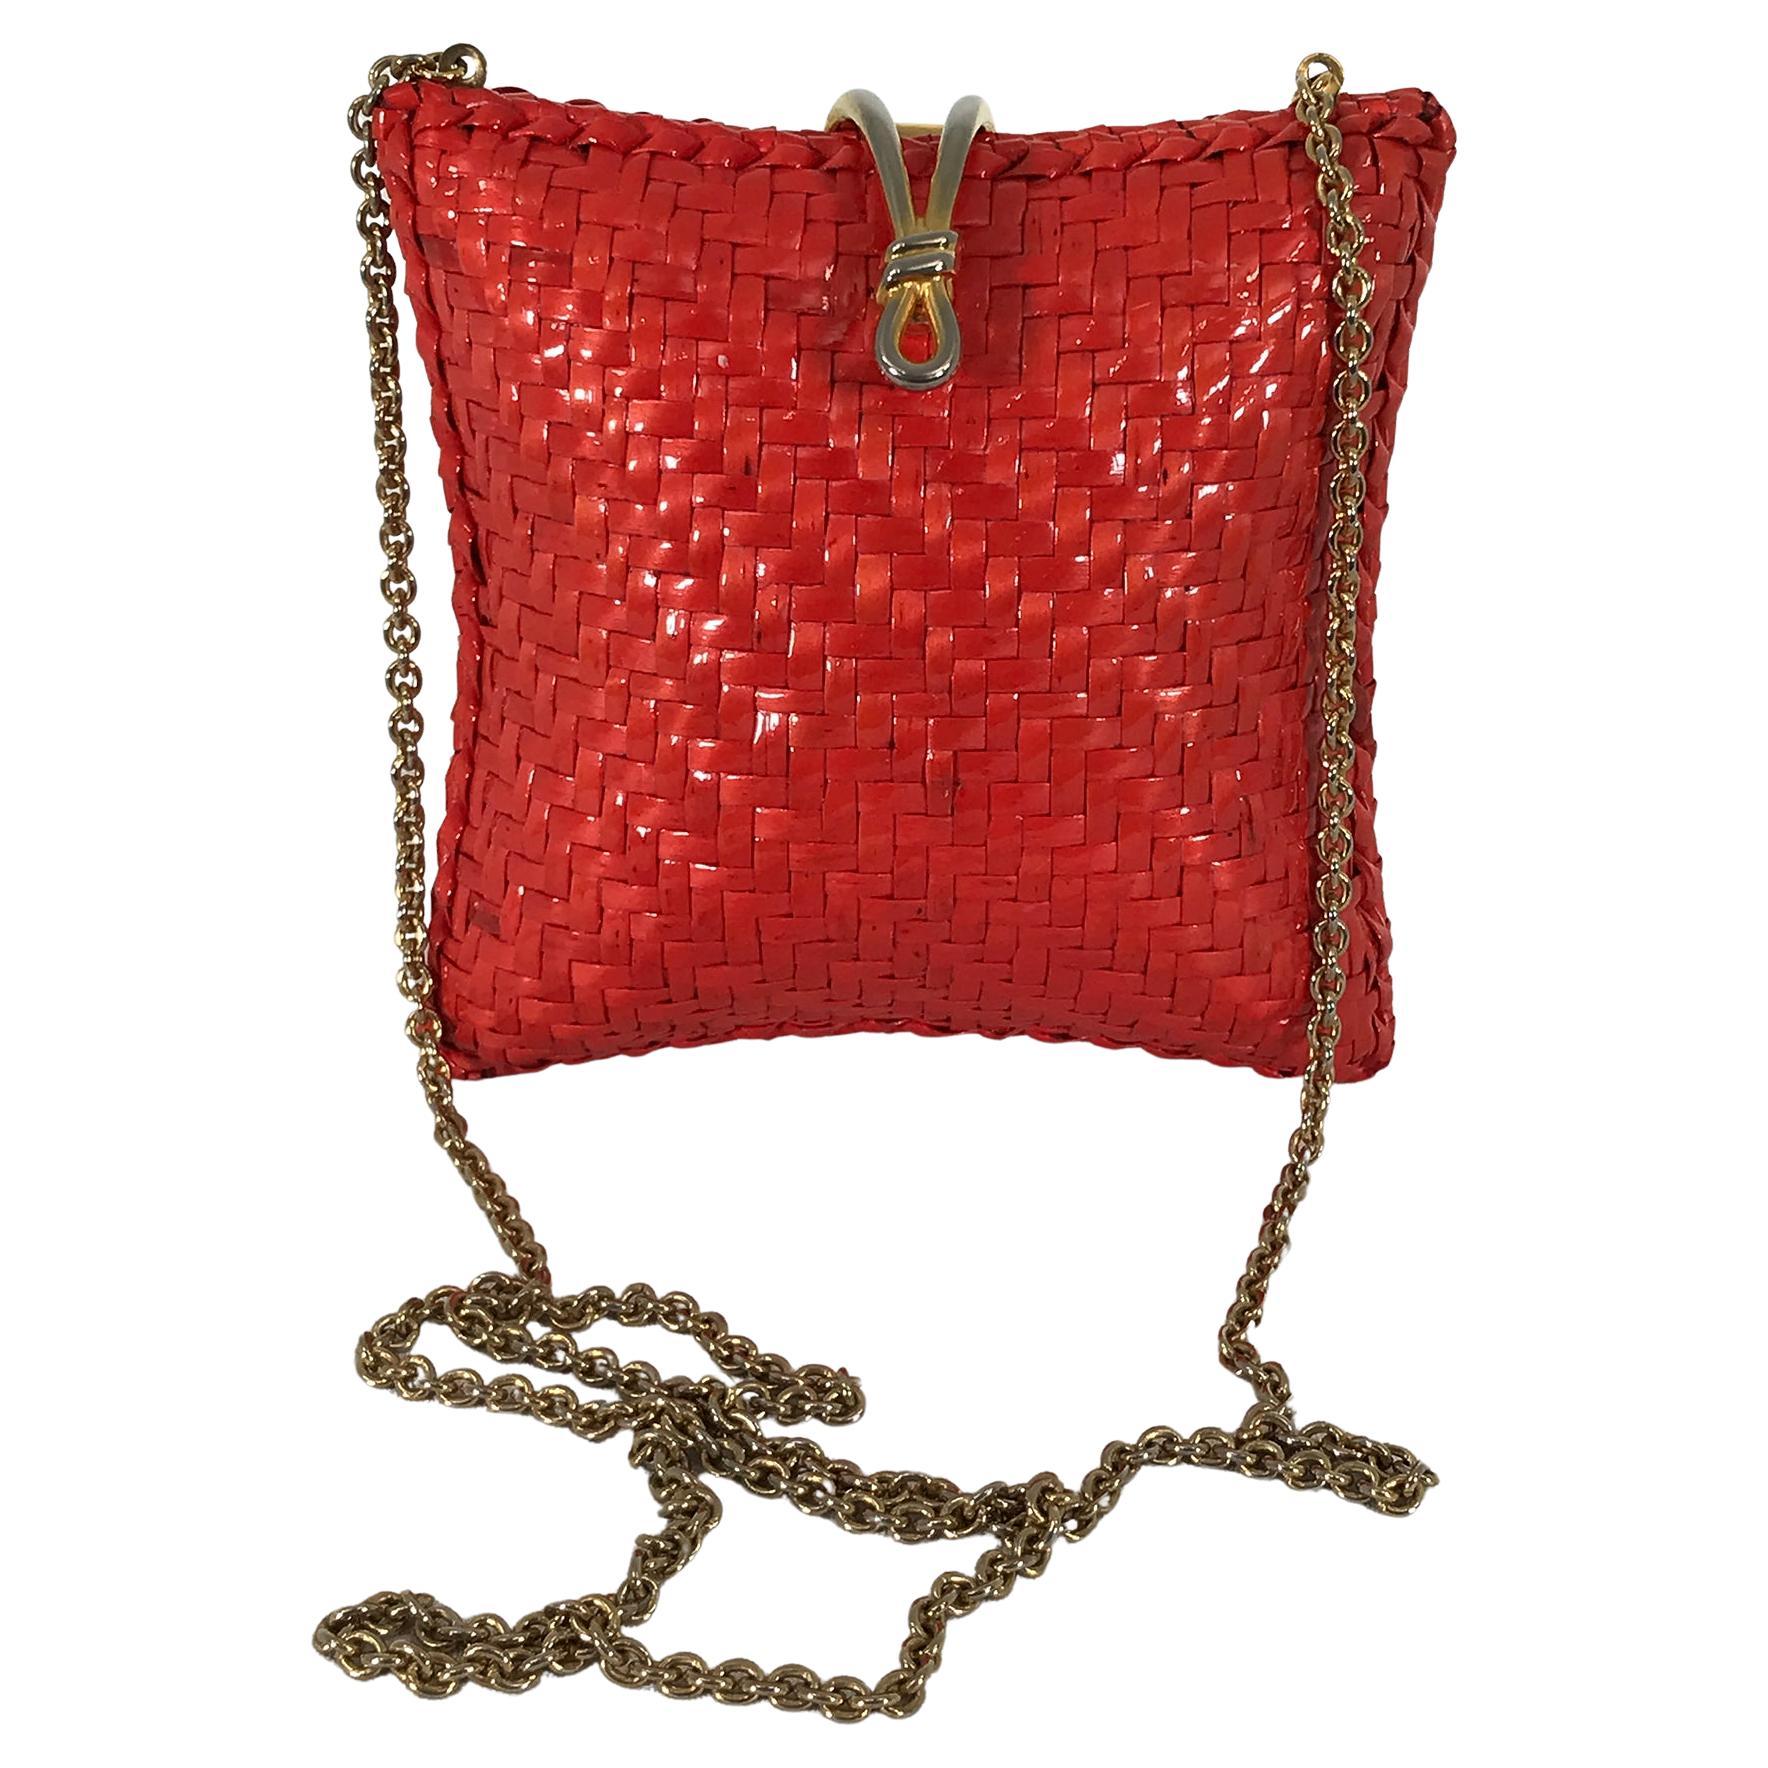 RODO Italy Square Orange Wicker Gold Chain Shoulder Bag 1970s